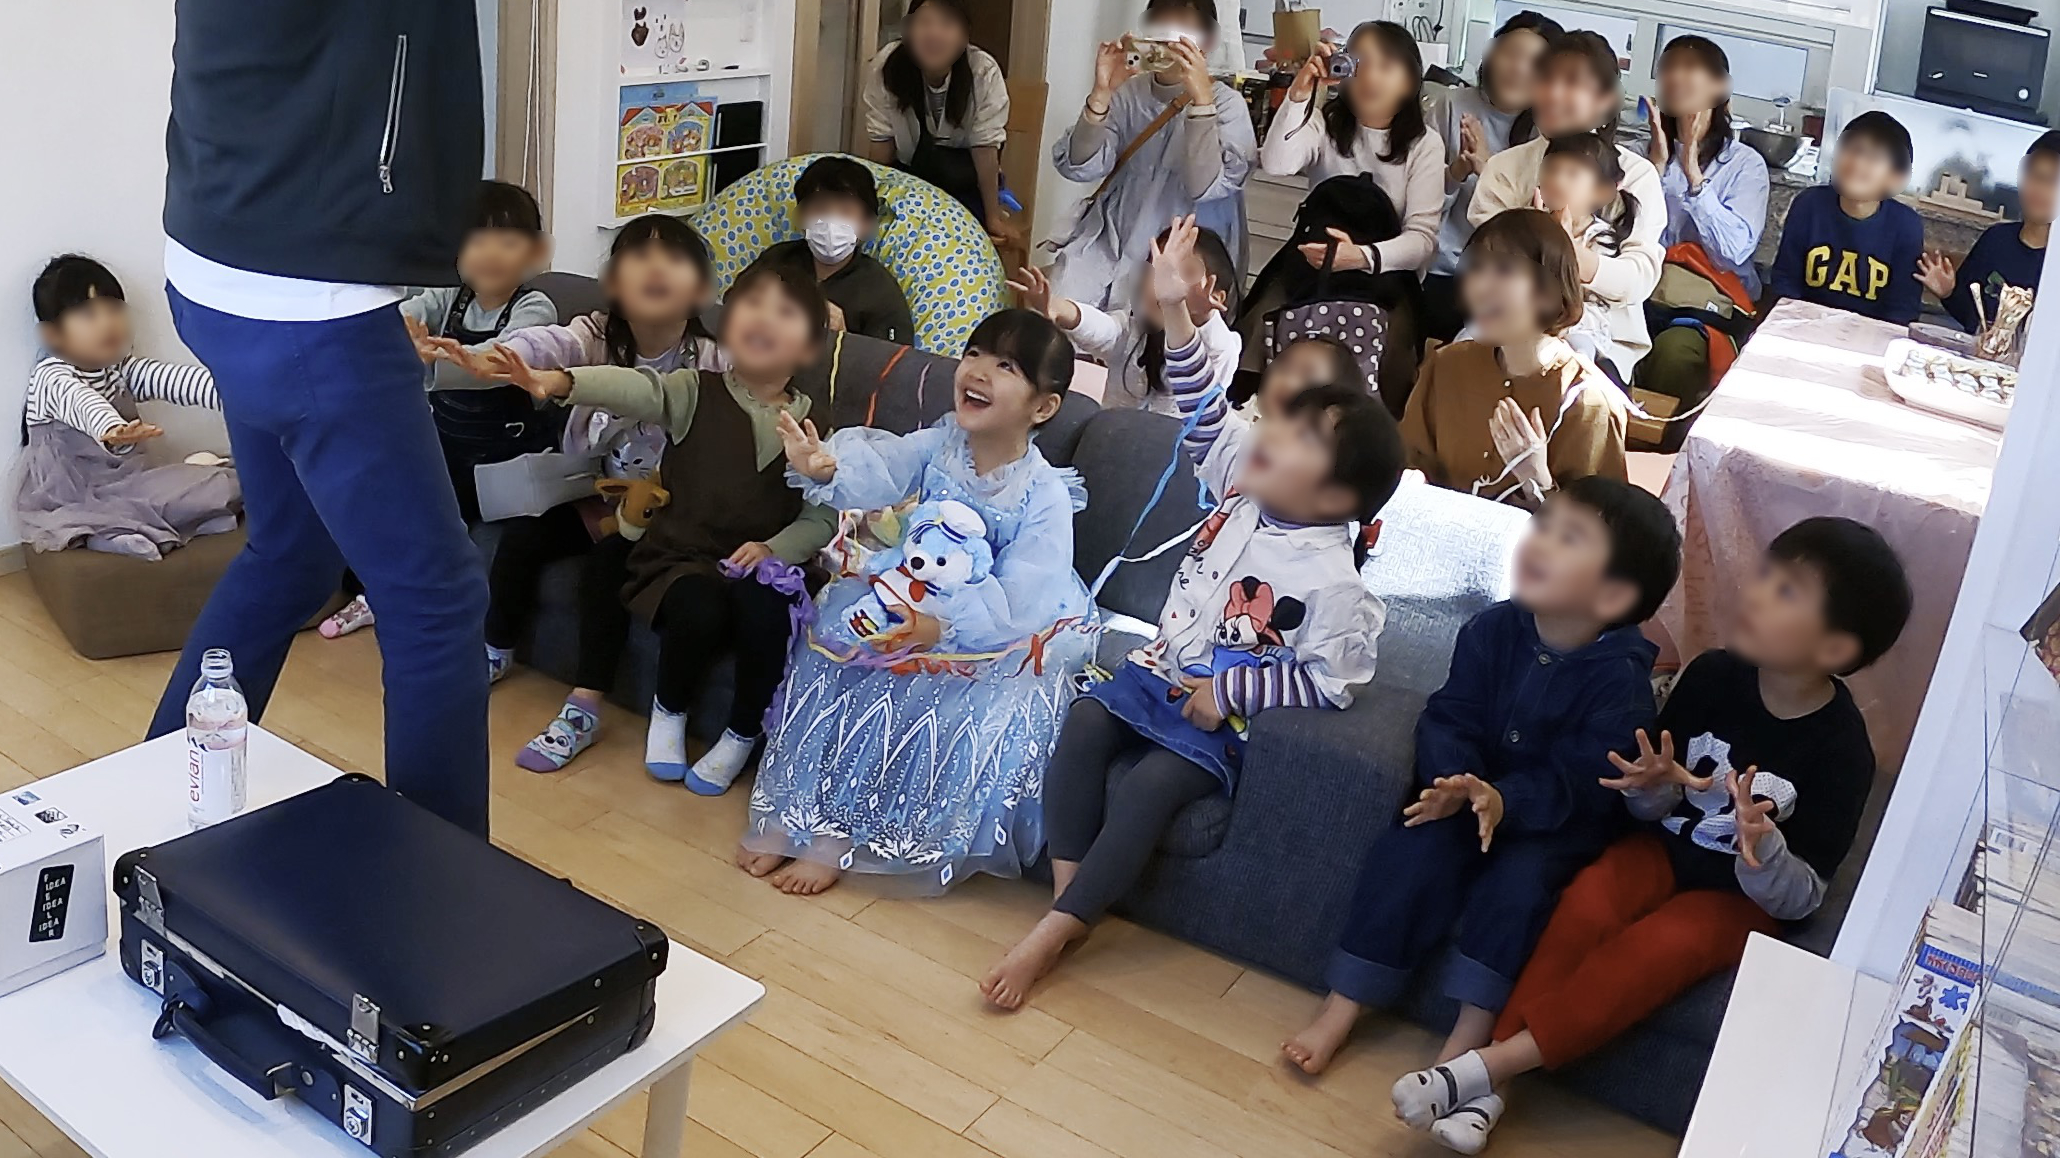 ストローが浮いている 5歳の娘のお誕生日会でマジックショー 藤沢市, 神奈川県 出張マジシャン